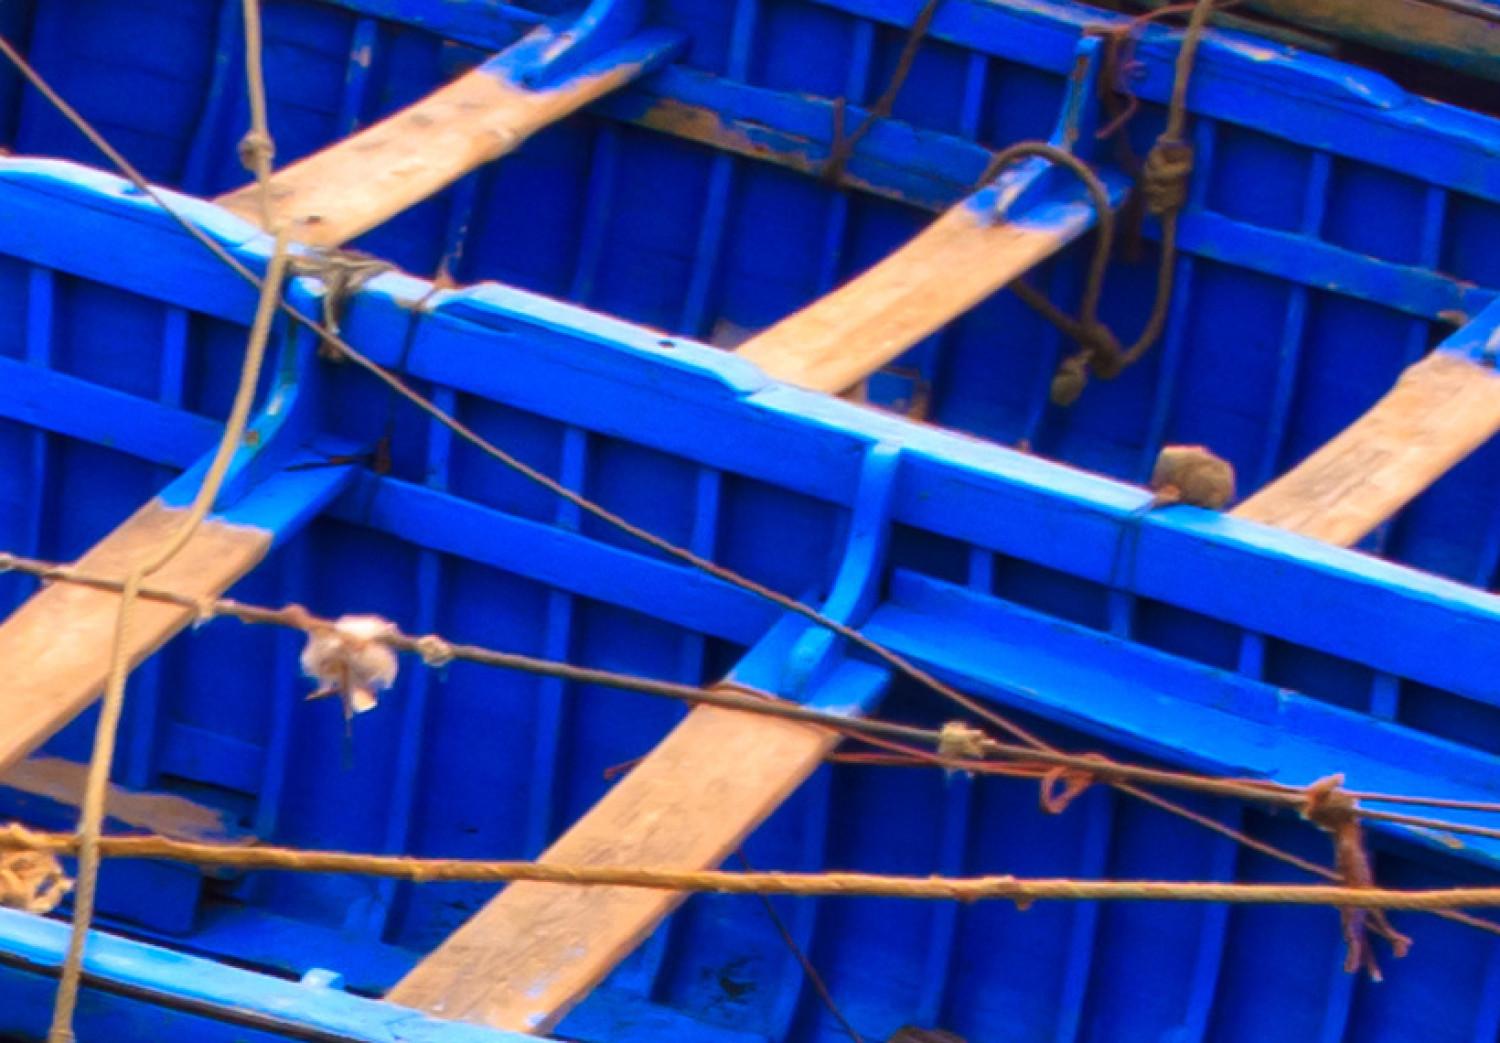 Cuadro moderno Barcos amarrados - paisaje marítimo en colores azules